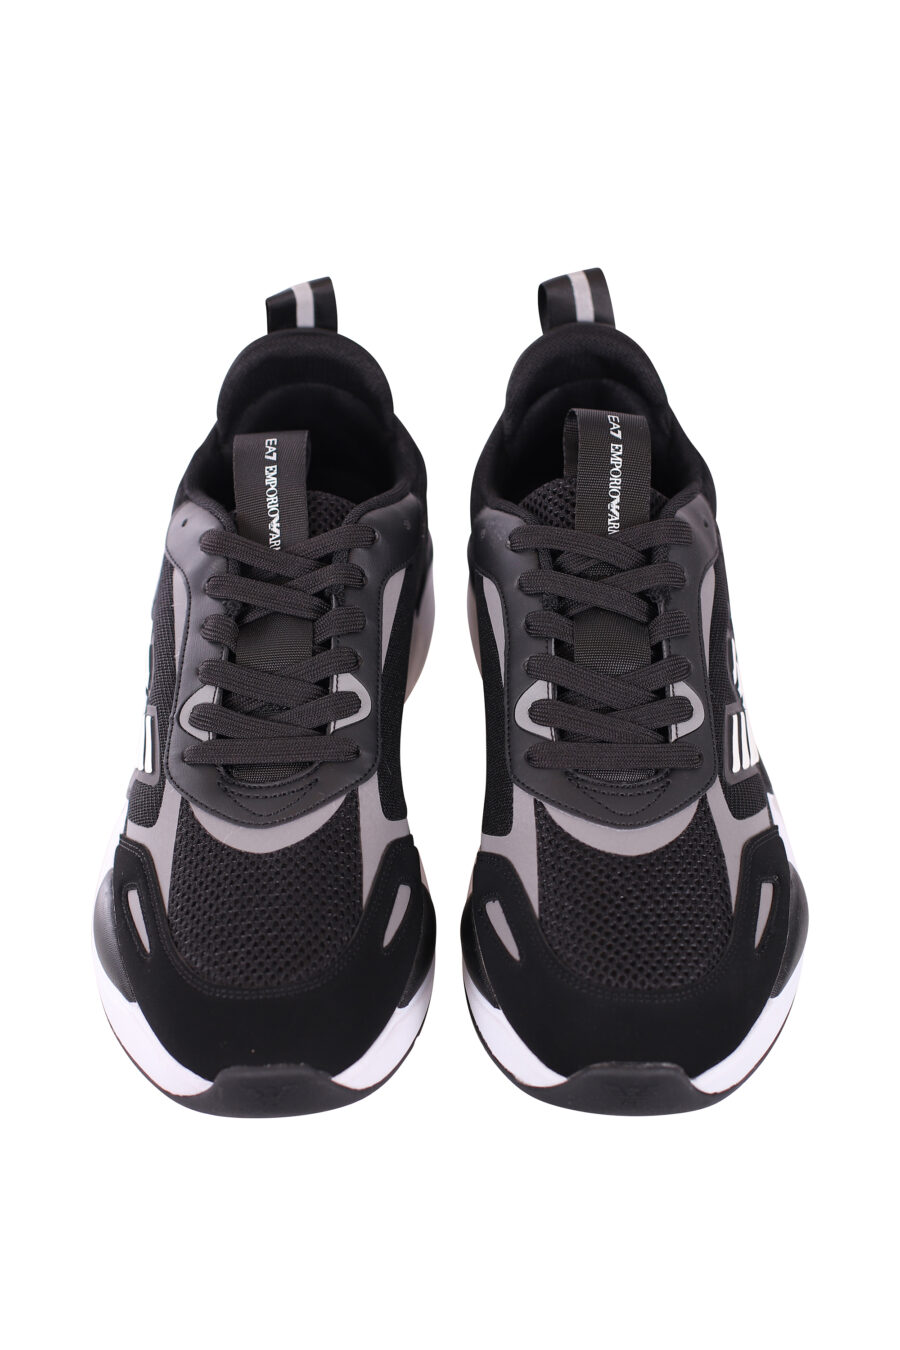 Zapatillas negras y plateado "ace runner" con logo de aguila - IMG 5646